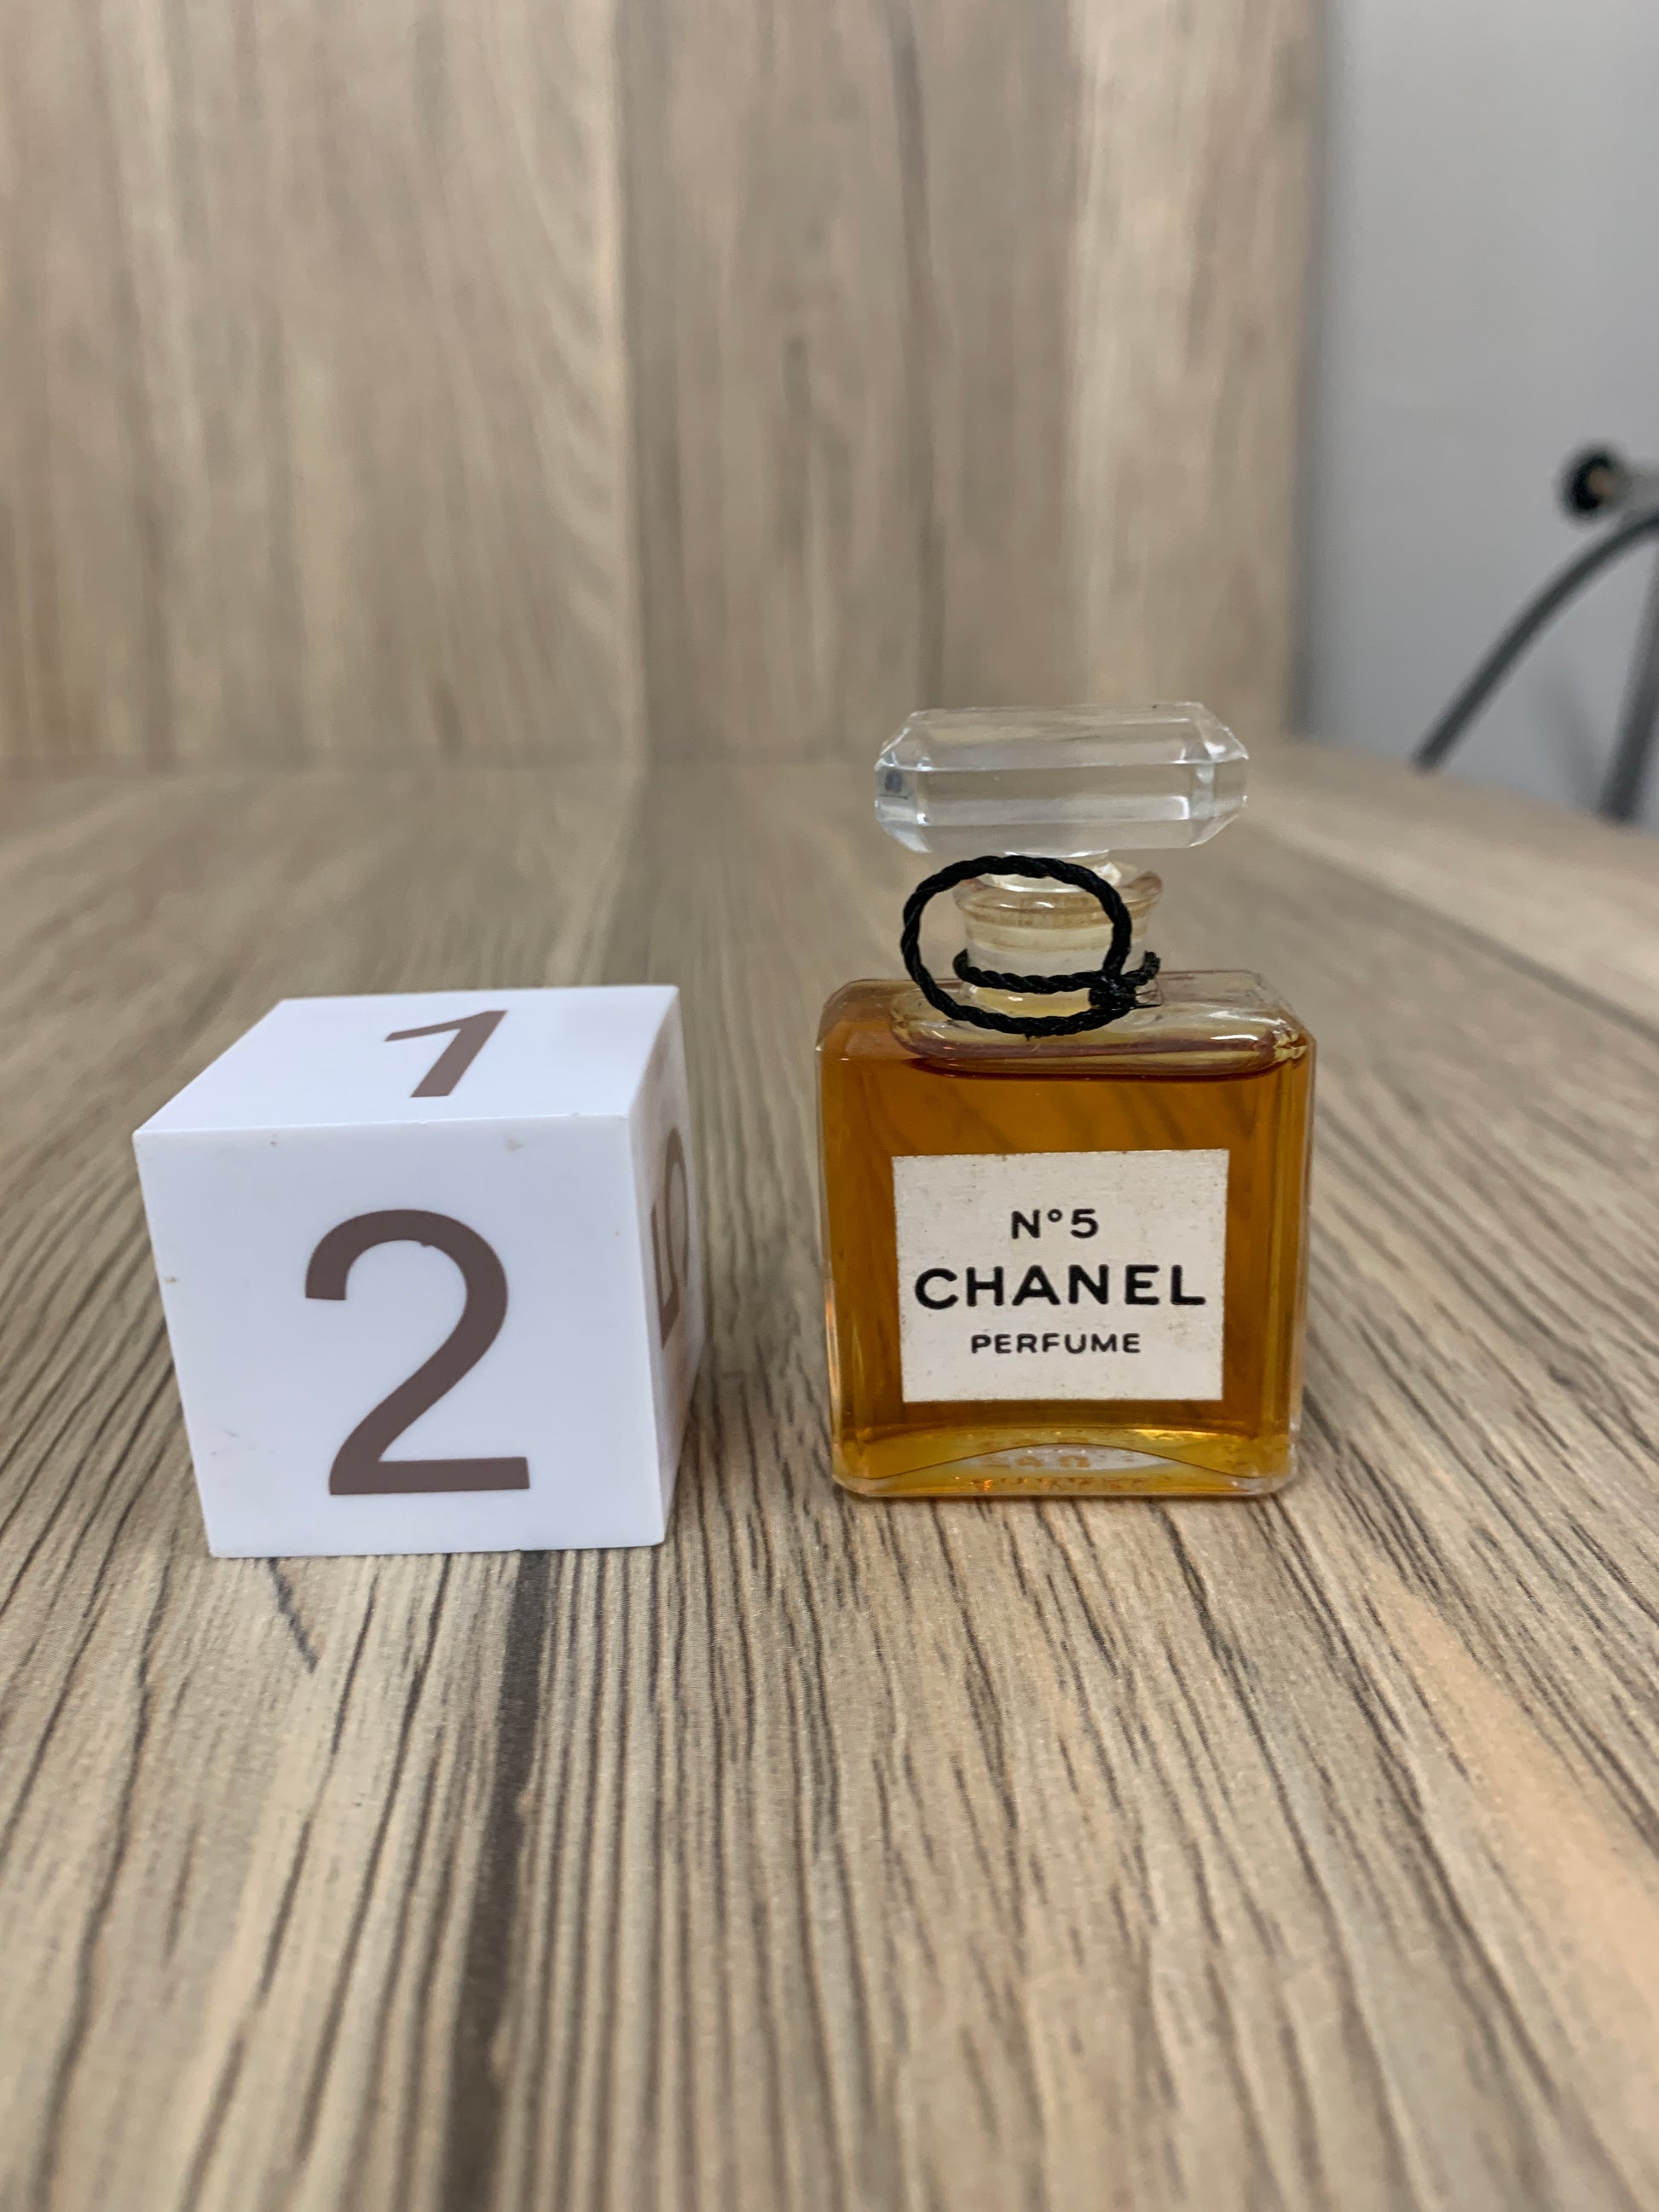 Chanel (Perfumes) 1973 Numéro 5, Eau de Toilette — Perfumes